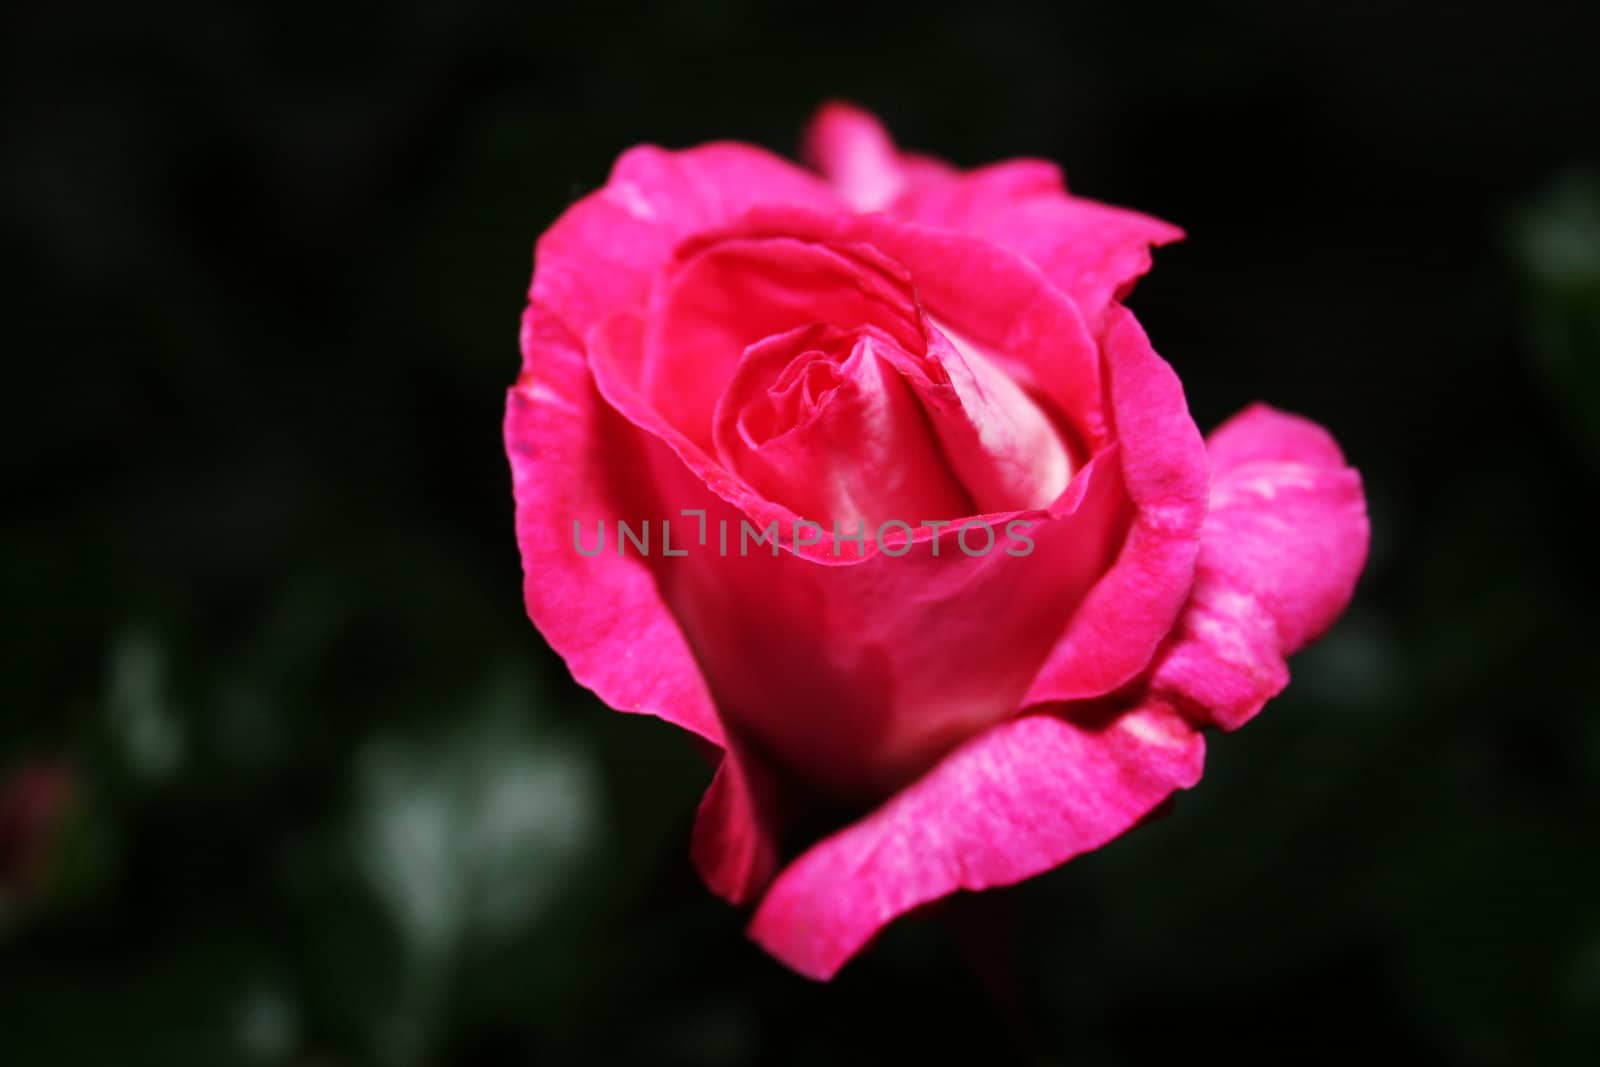 Pink rose in garden at night